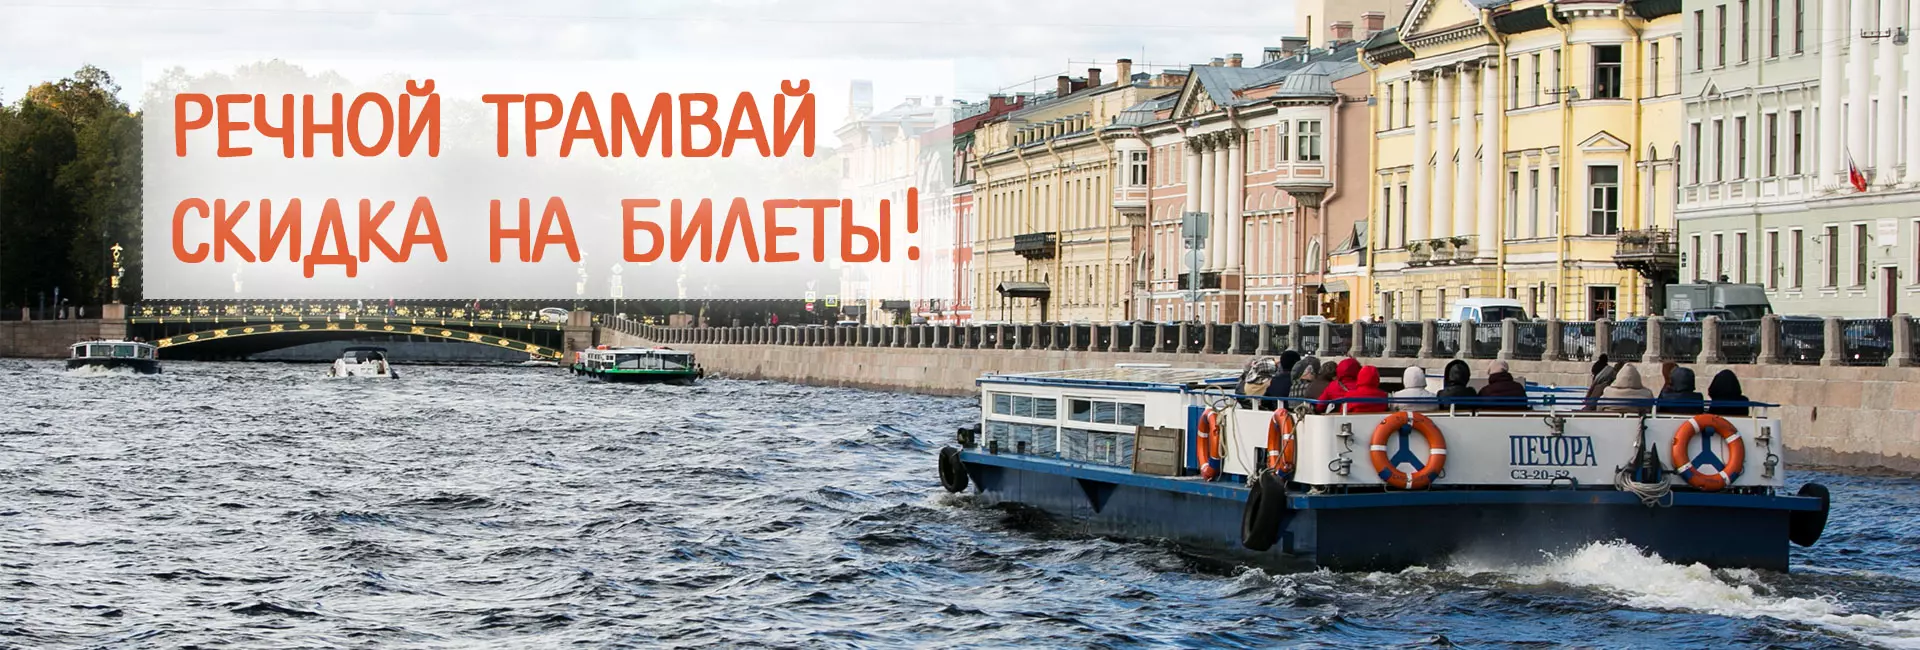 Катание на речном трамвайчике в Санкт-Петербурге